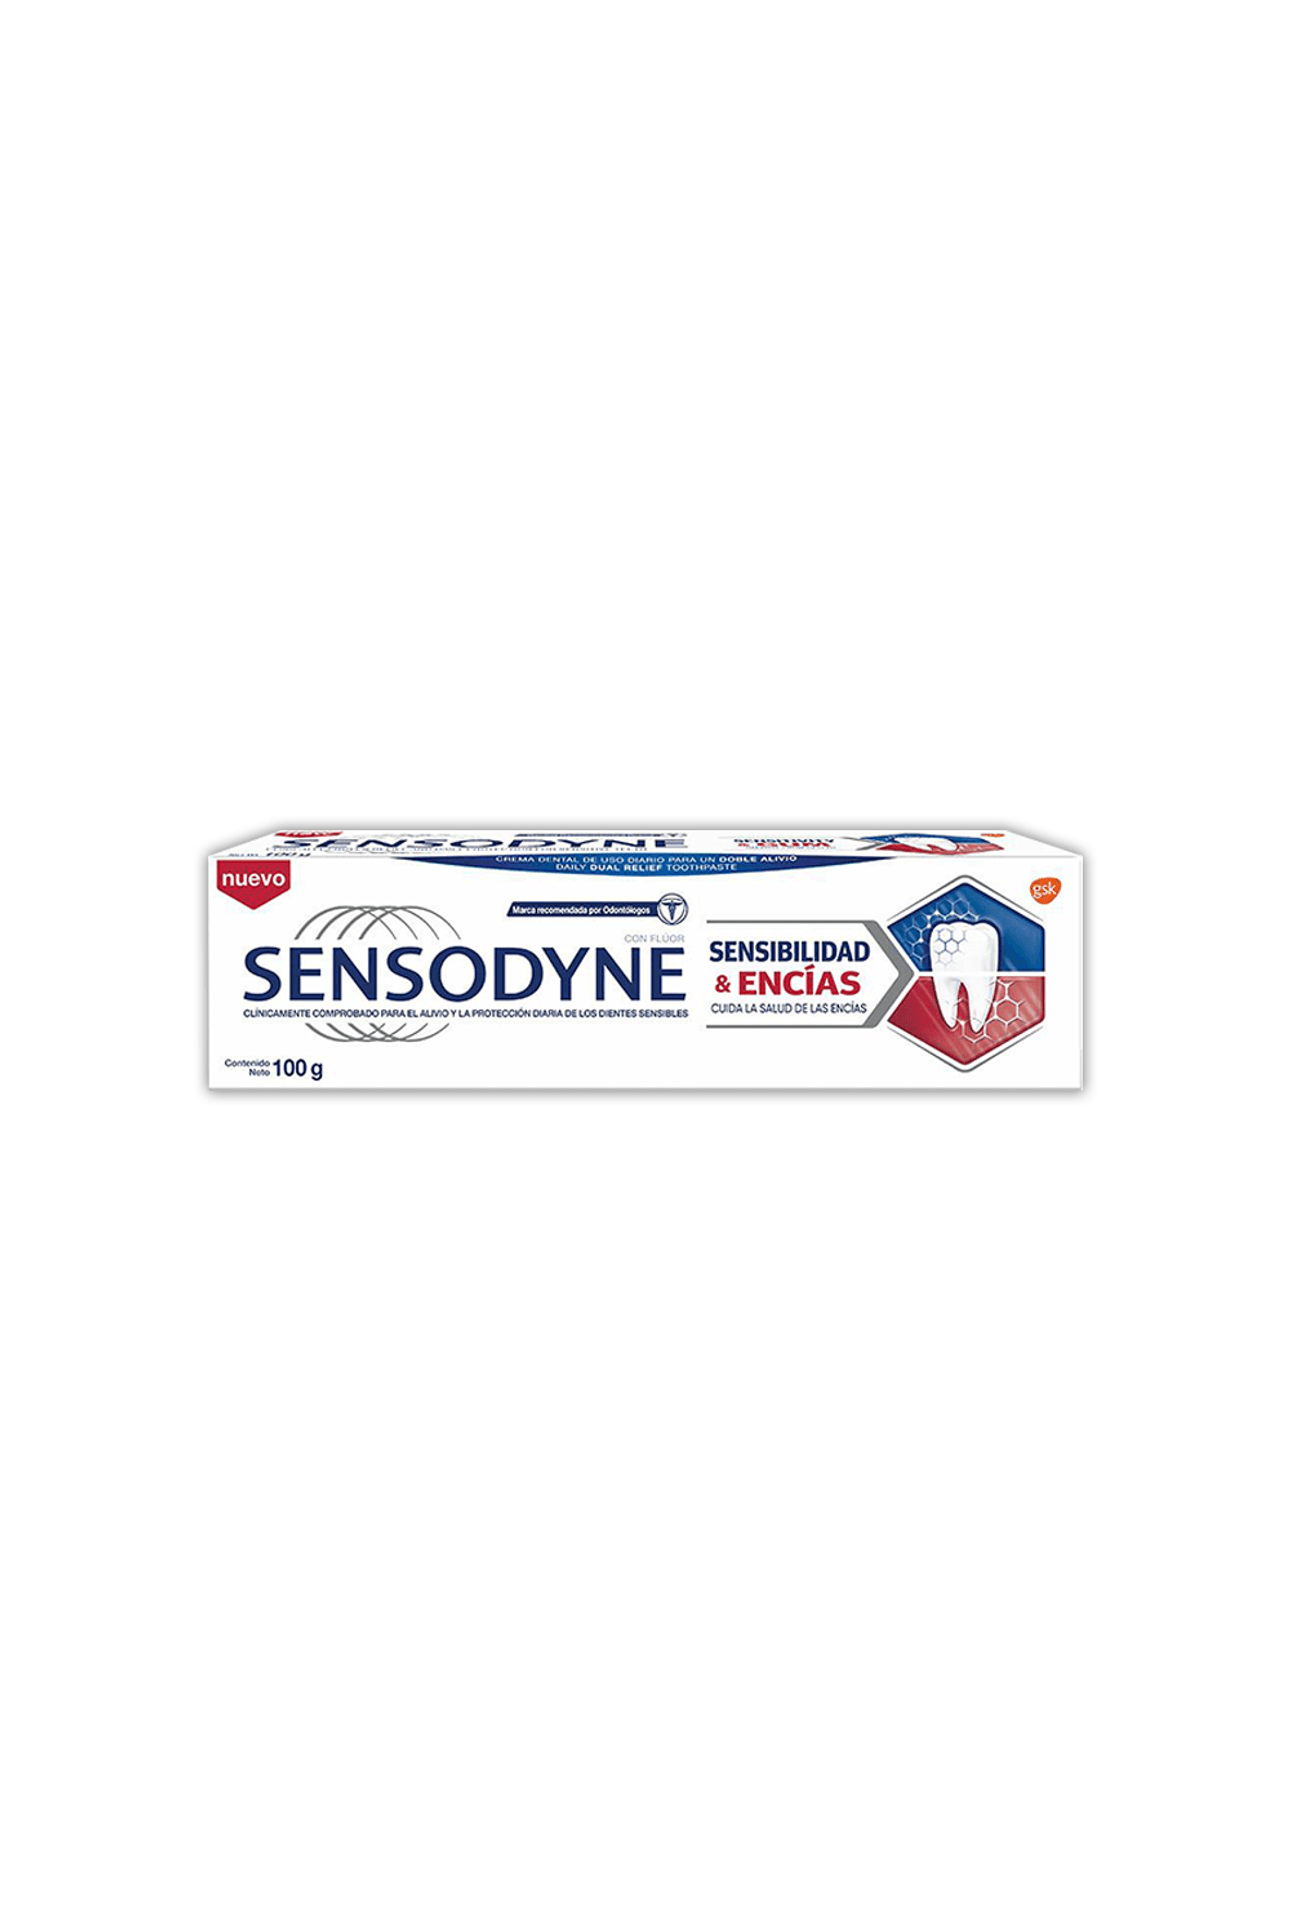 2120170_Sensodyne-Crema-Dental-Sensibilidad-y-Encias-x-100-gr_img1